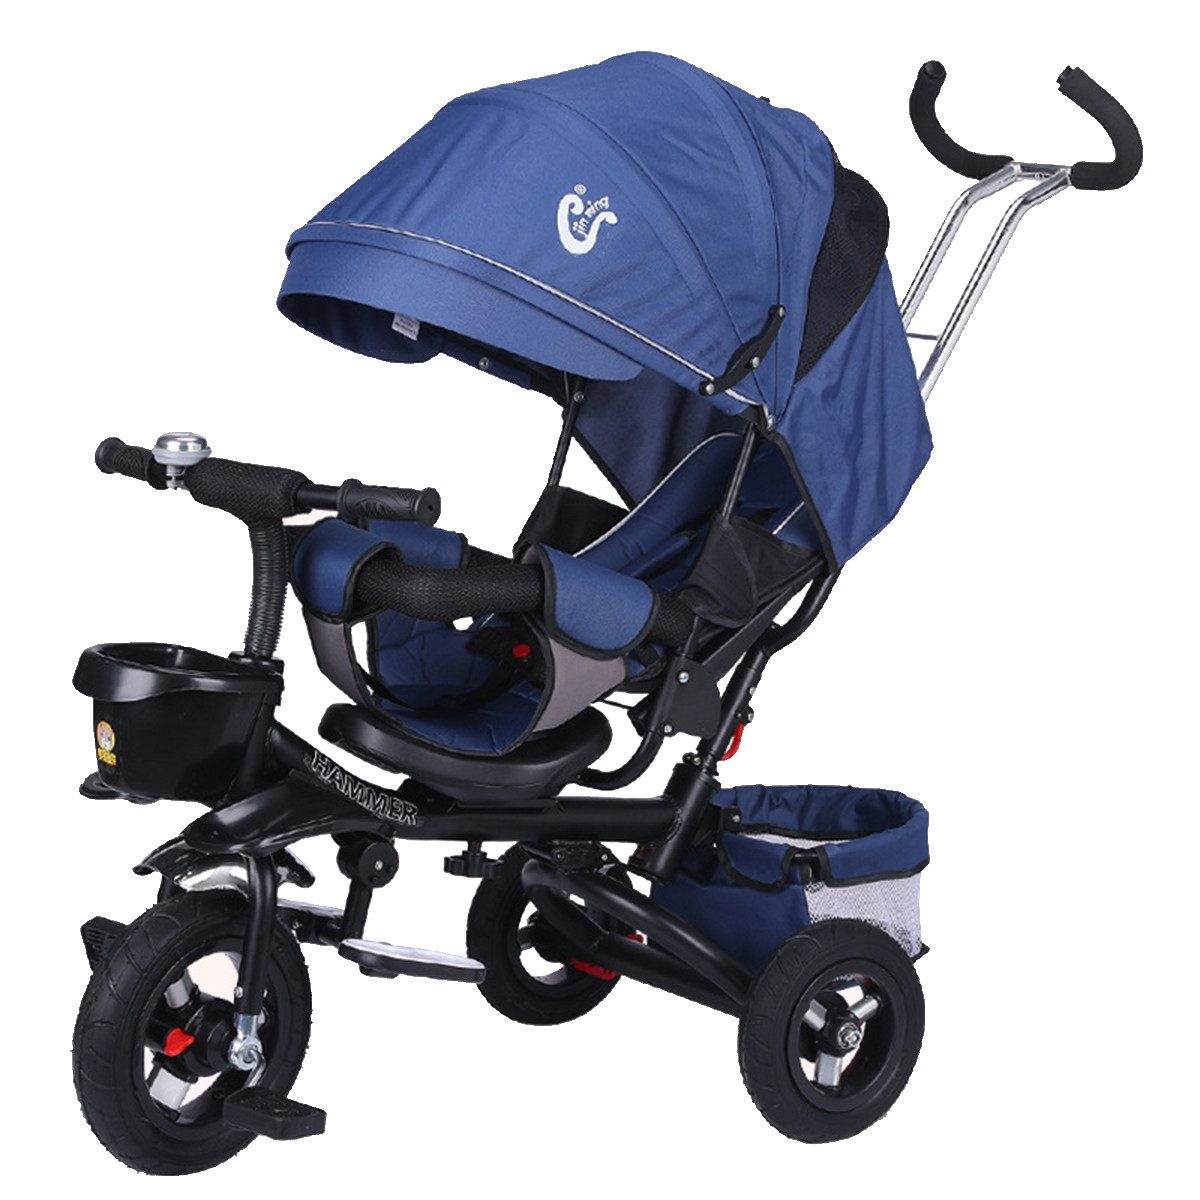 Novzep Kombi-Kinderwagen Baby-Dreirad, faltbar, Sicherheitssitz, Markise, vergrößerter, Aufbewahrungskorb, geeignet für Babys von 6 Monaten bis 6 Jahren